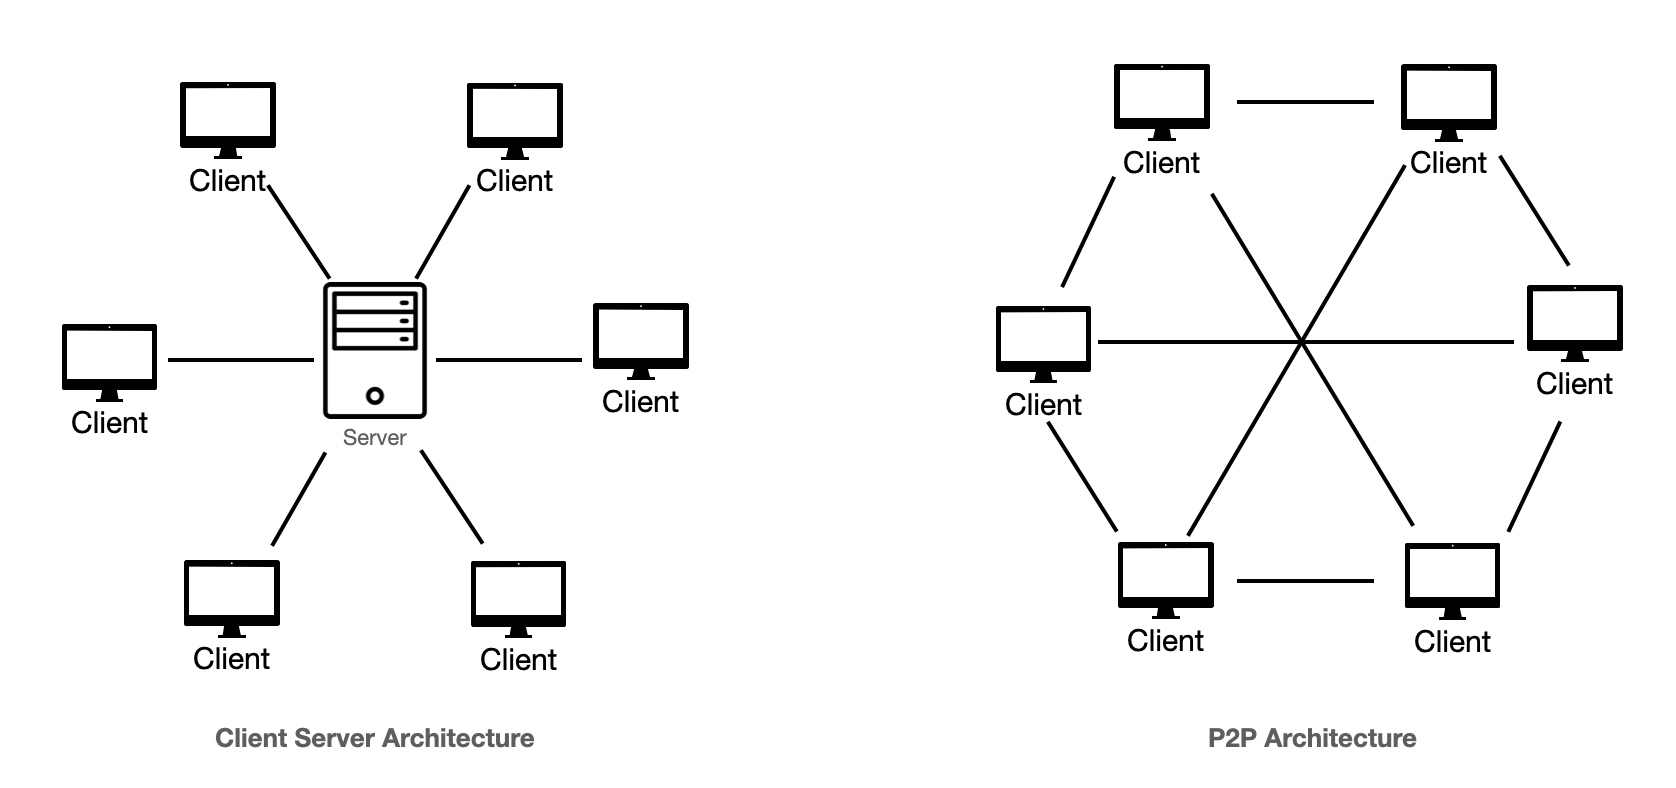 Client Server Architecture VS P2P Architecture